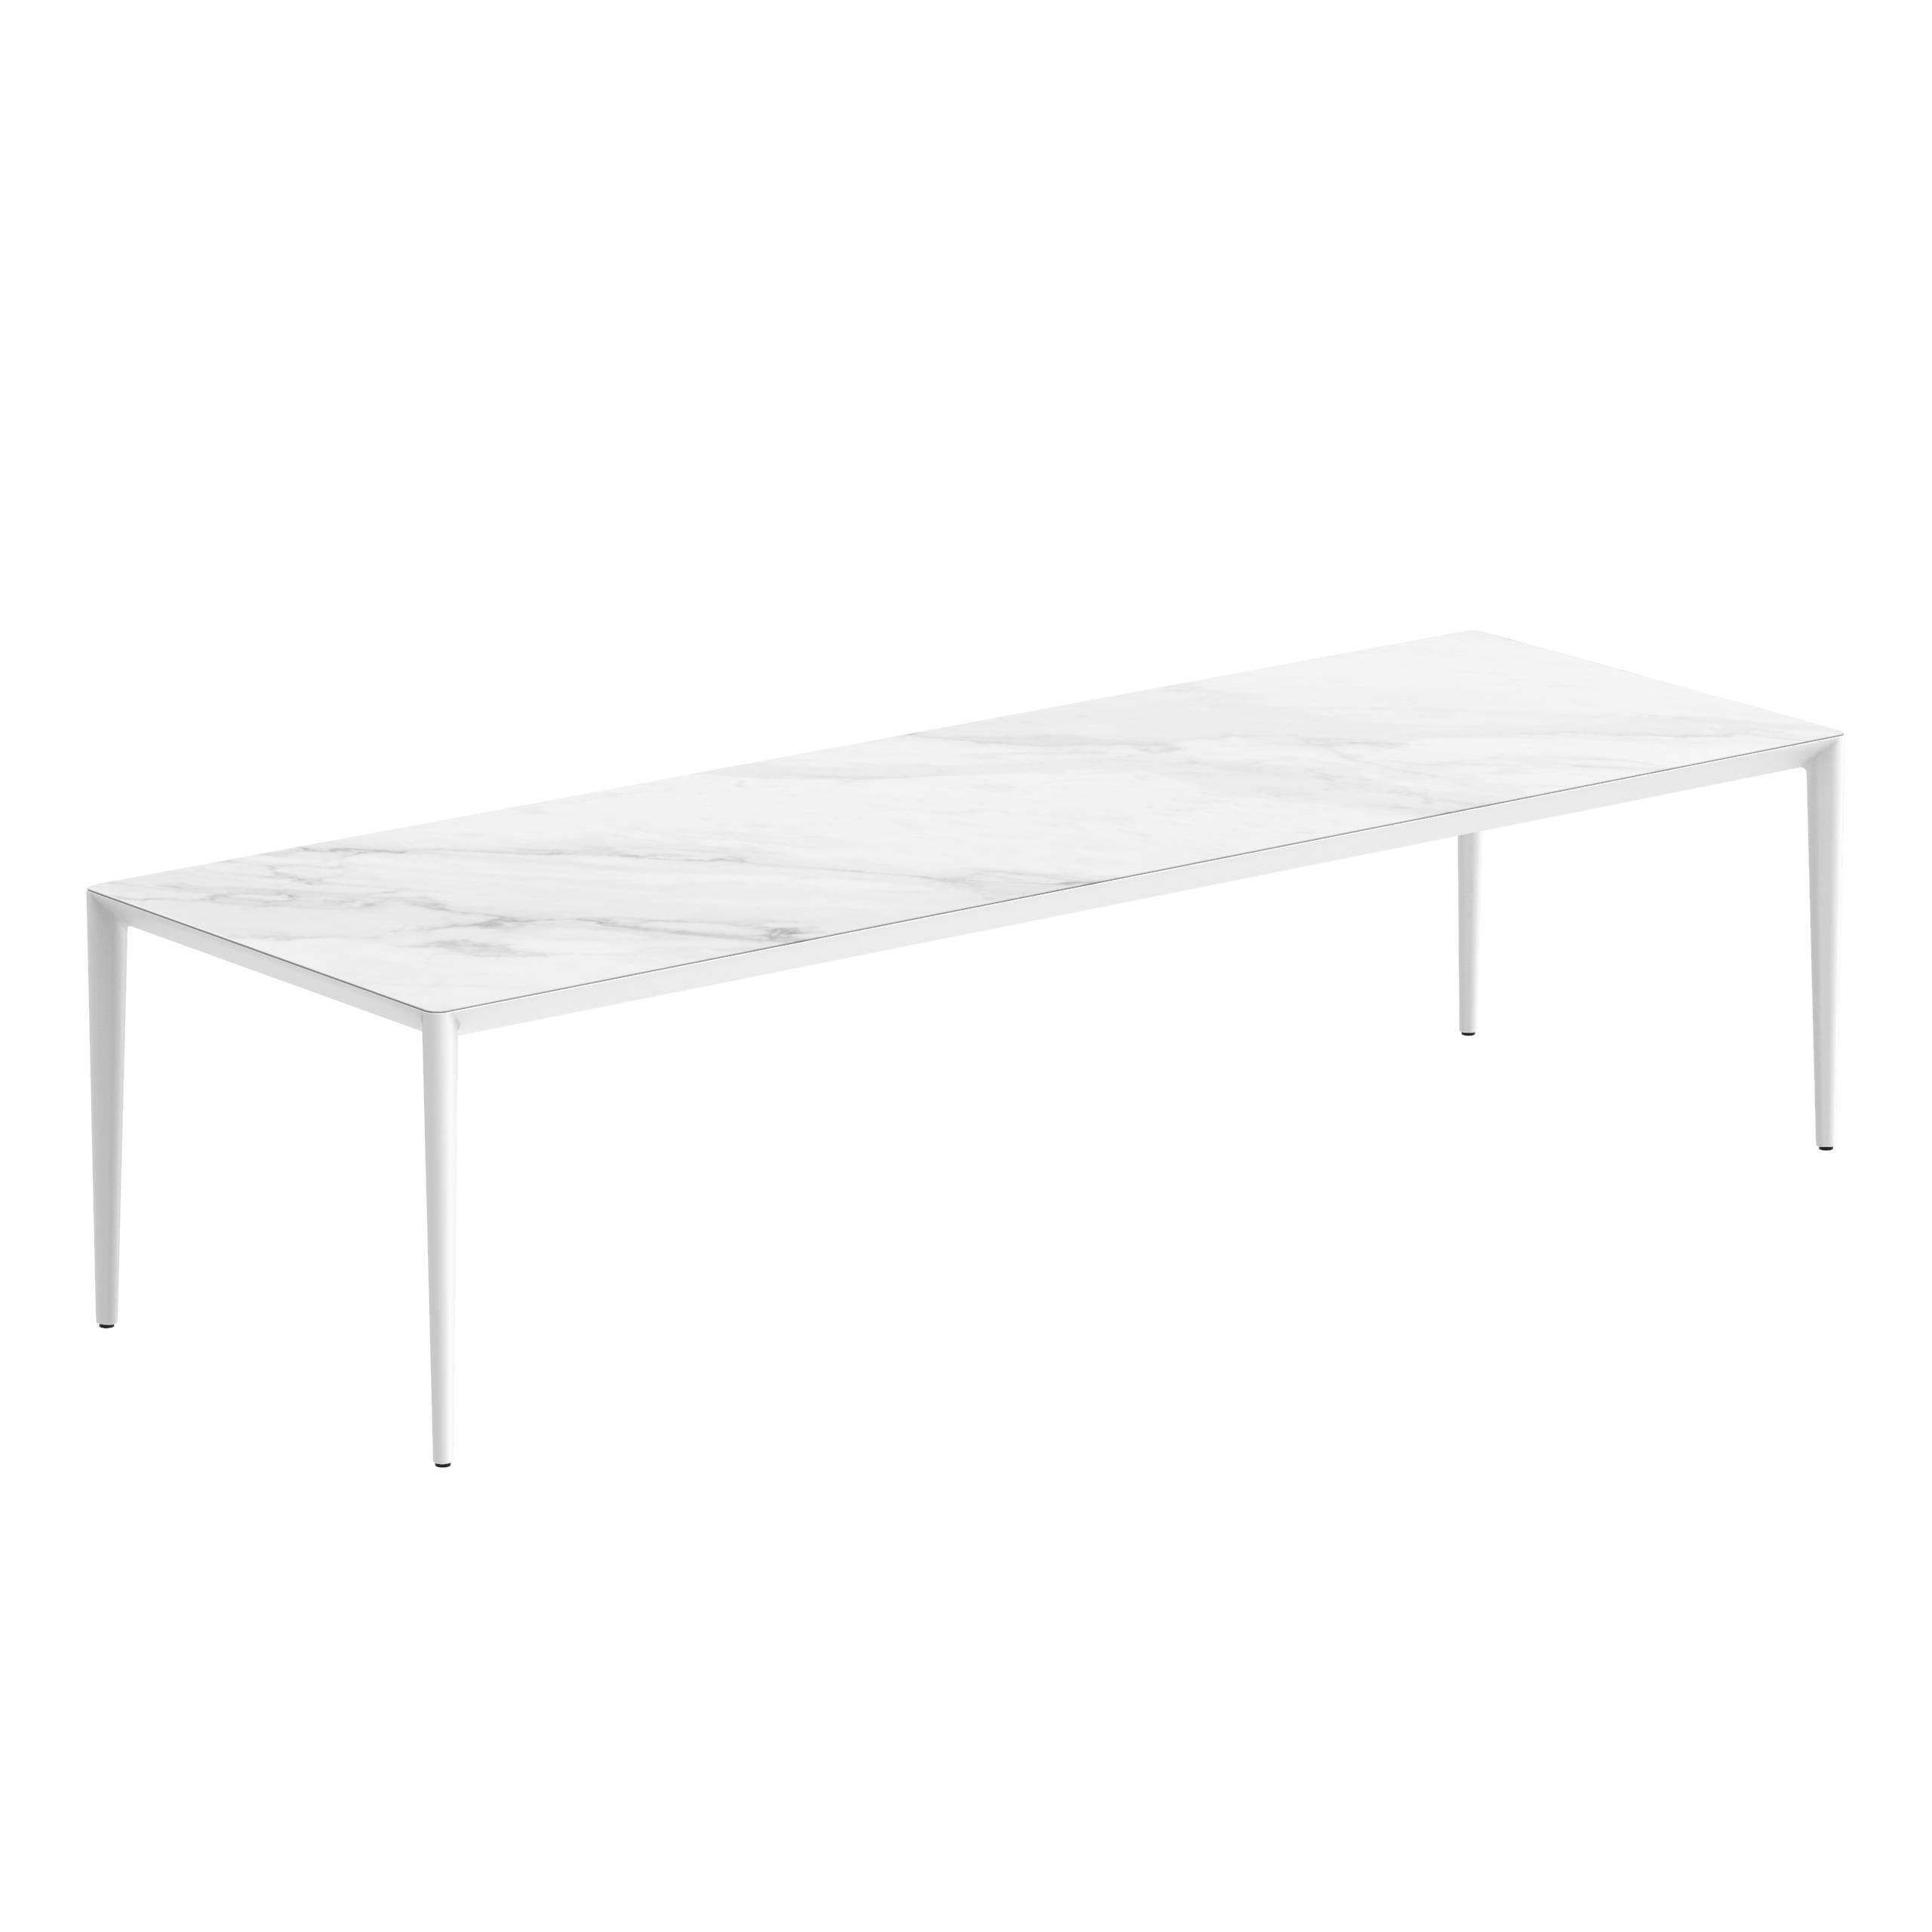 U-Nite Table 300x100cm White With Ceramic Tabletop In Bianco Statuario